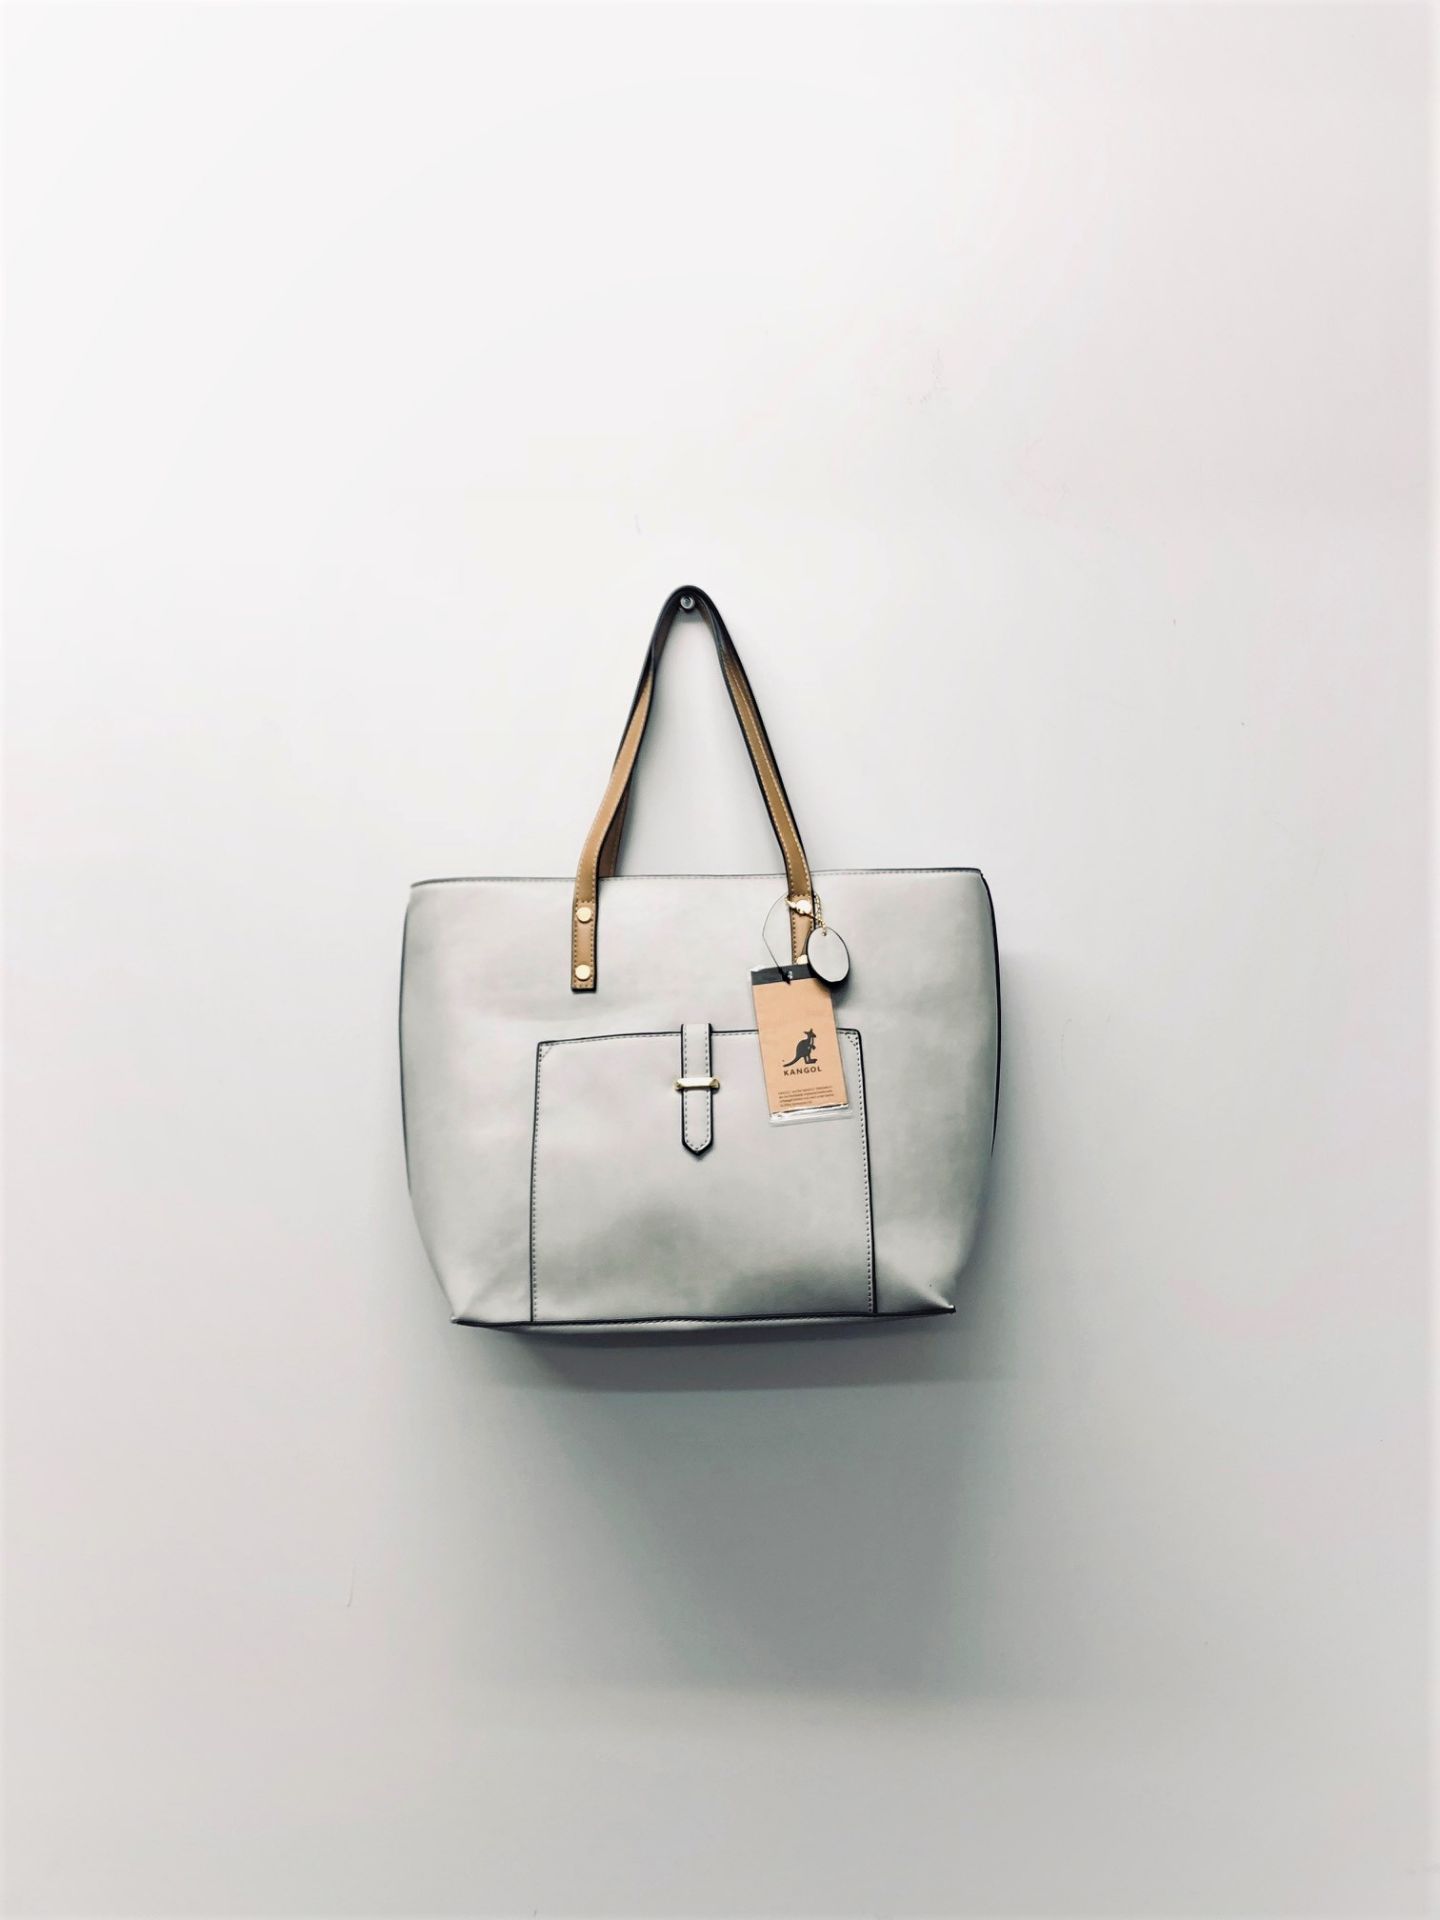 V Brand New Kangol Grey & Tan Trim Front Pocket Shopper Bag - Image 3 of 3